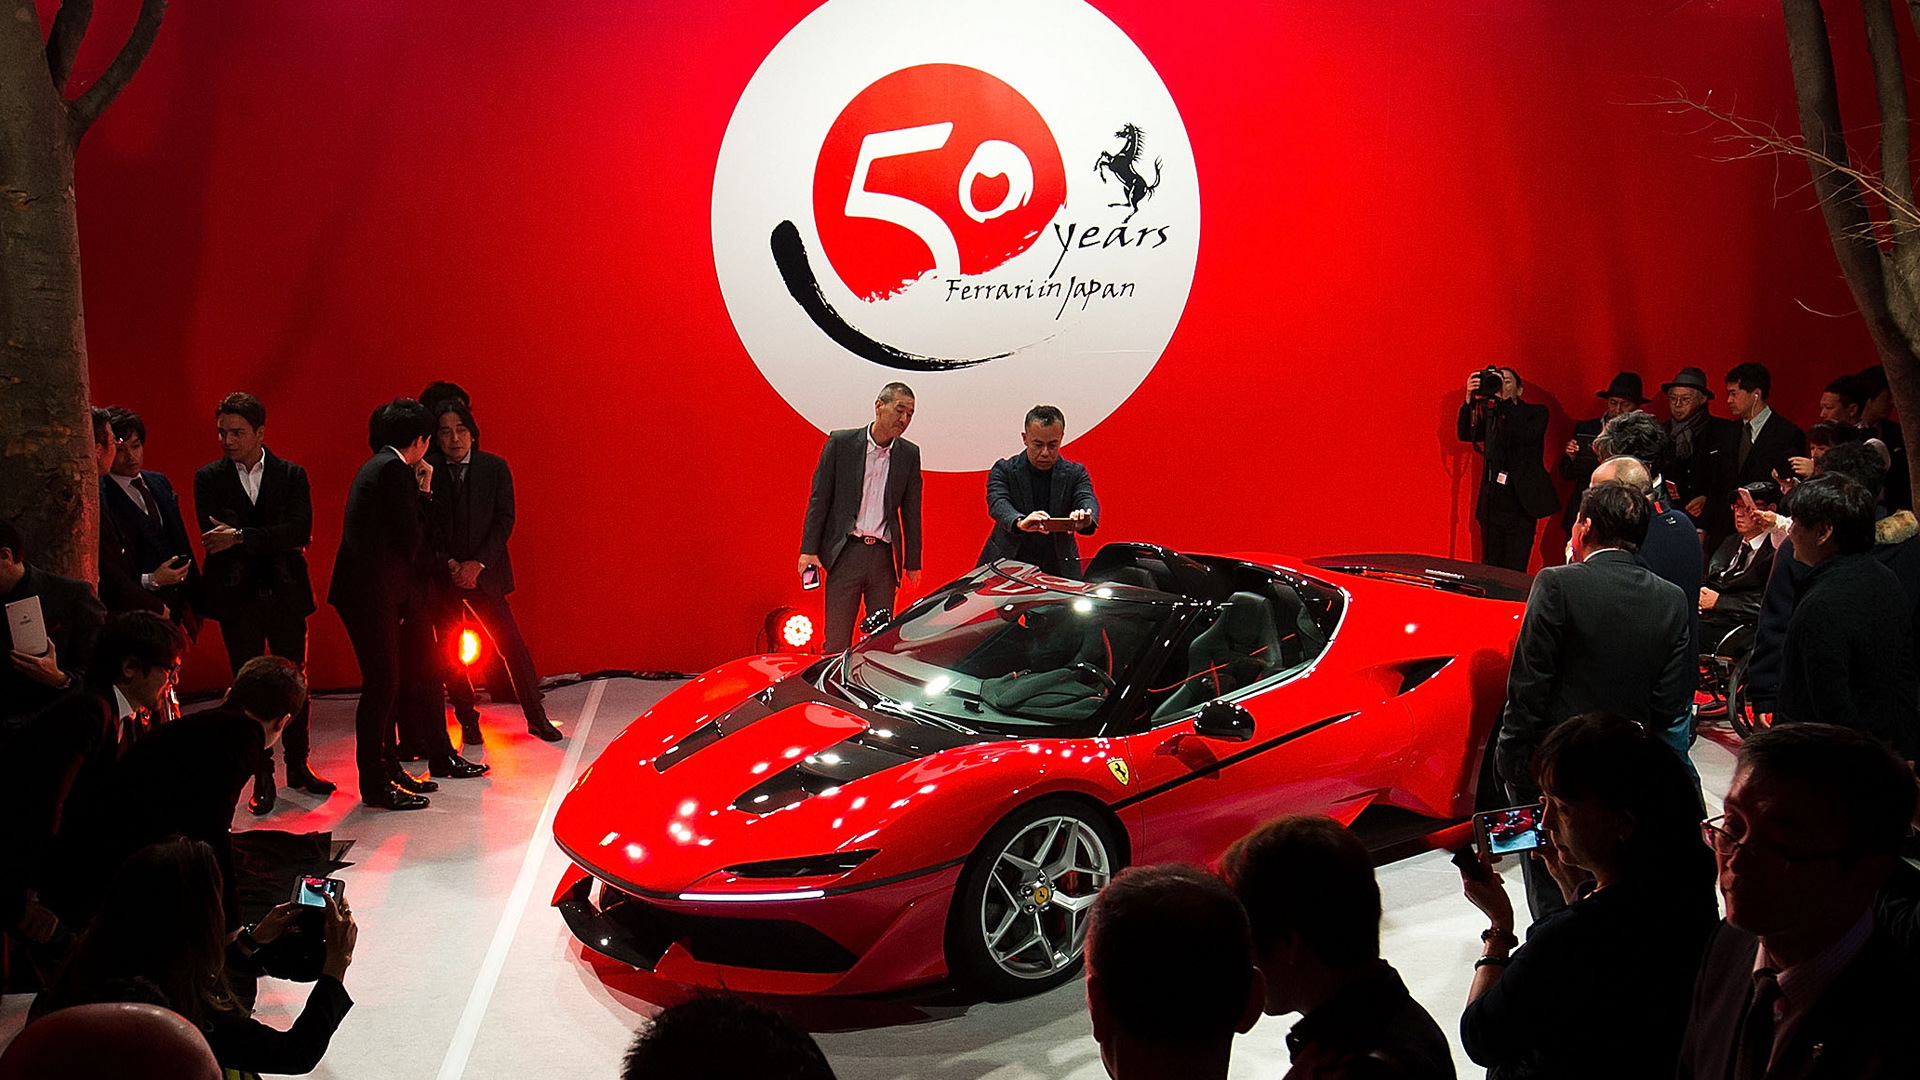 Ferrari J50 celebrates 50 years of Ferrari in Japan